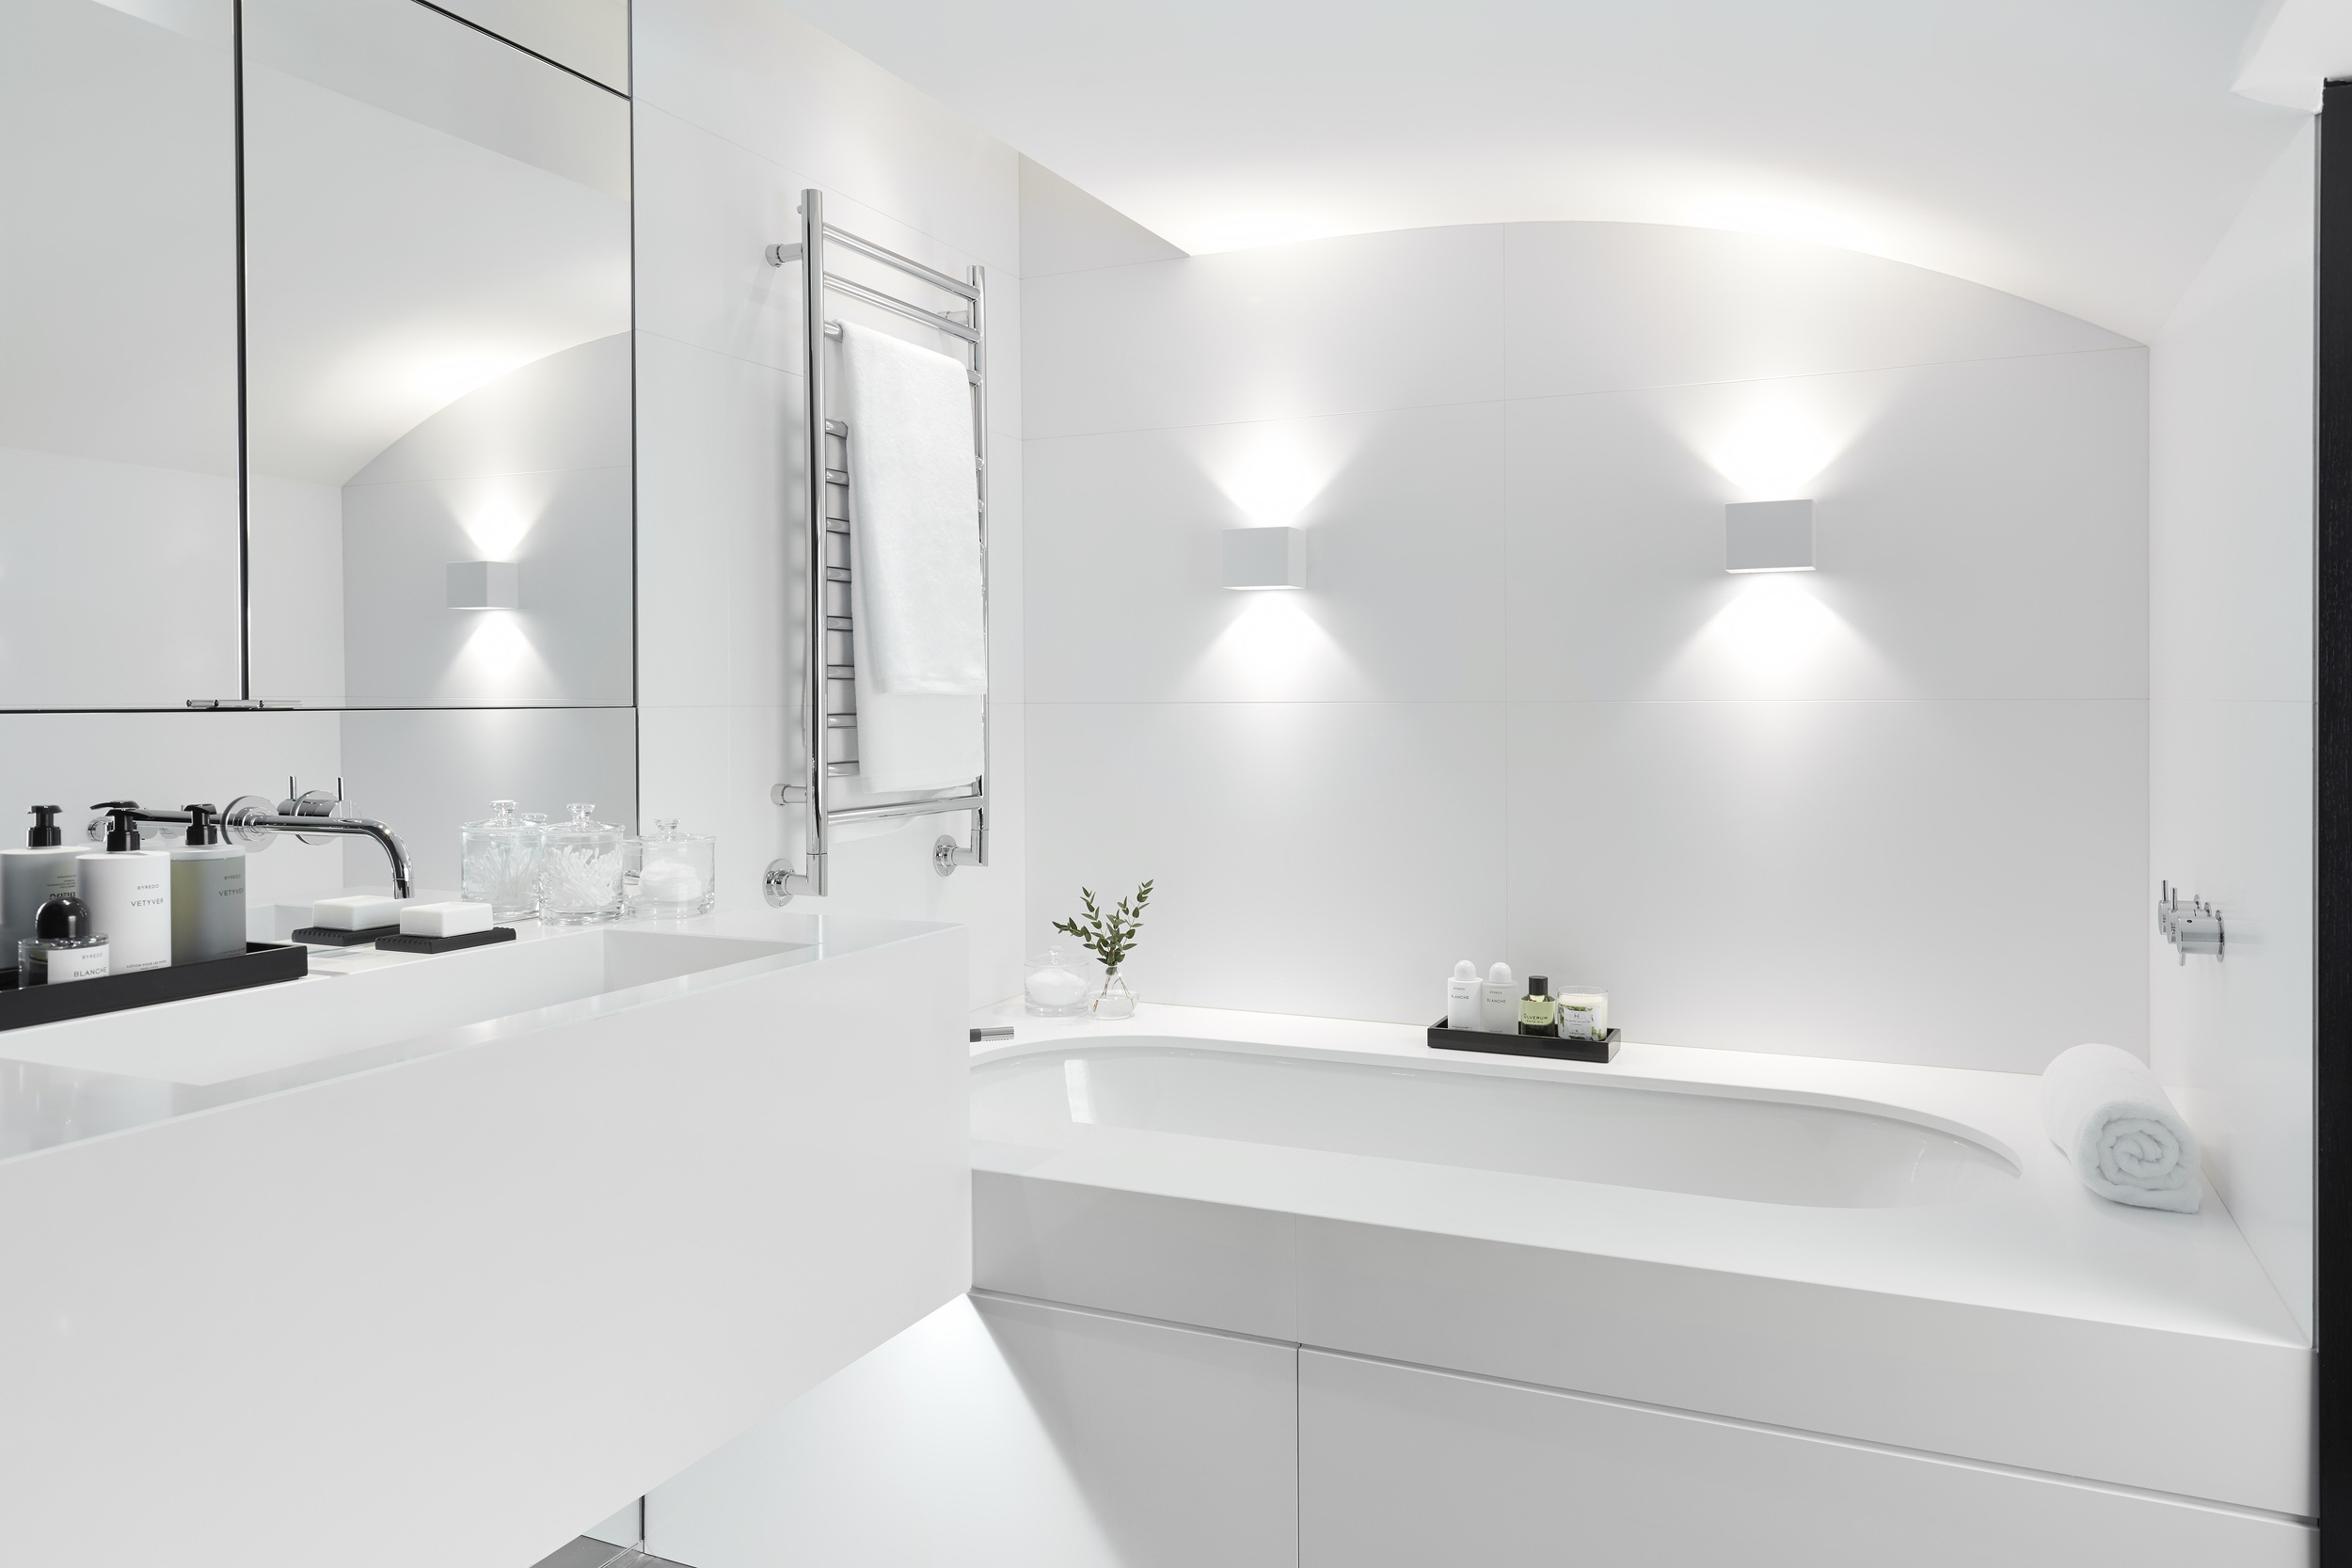 Dazzling white bathroom with bathtub